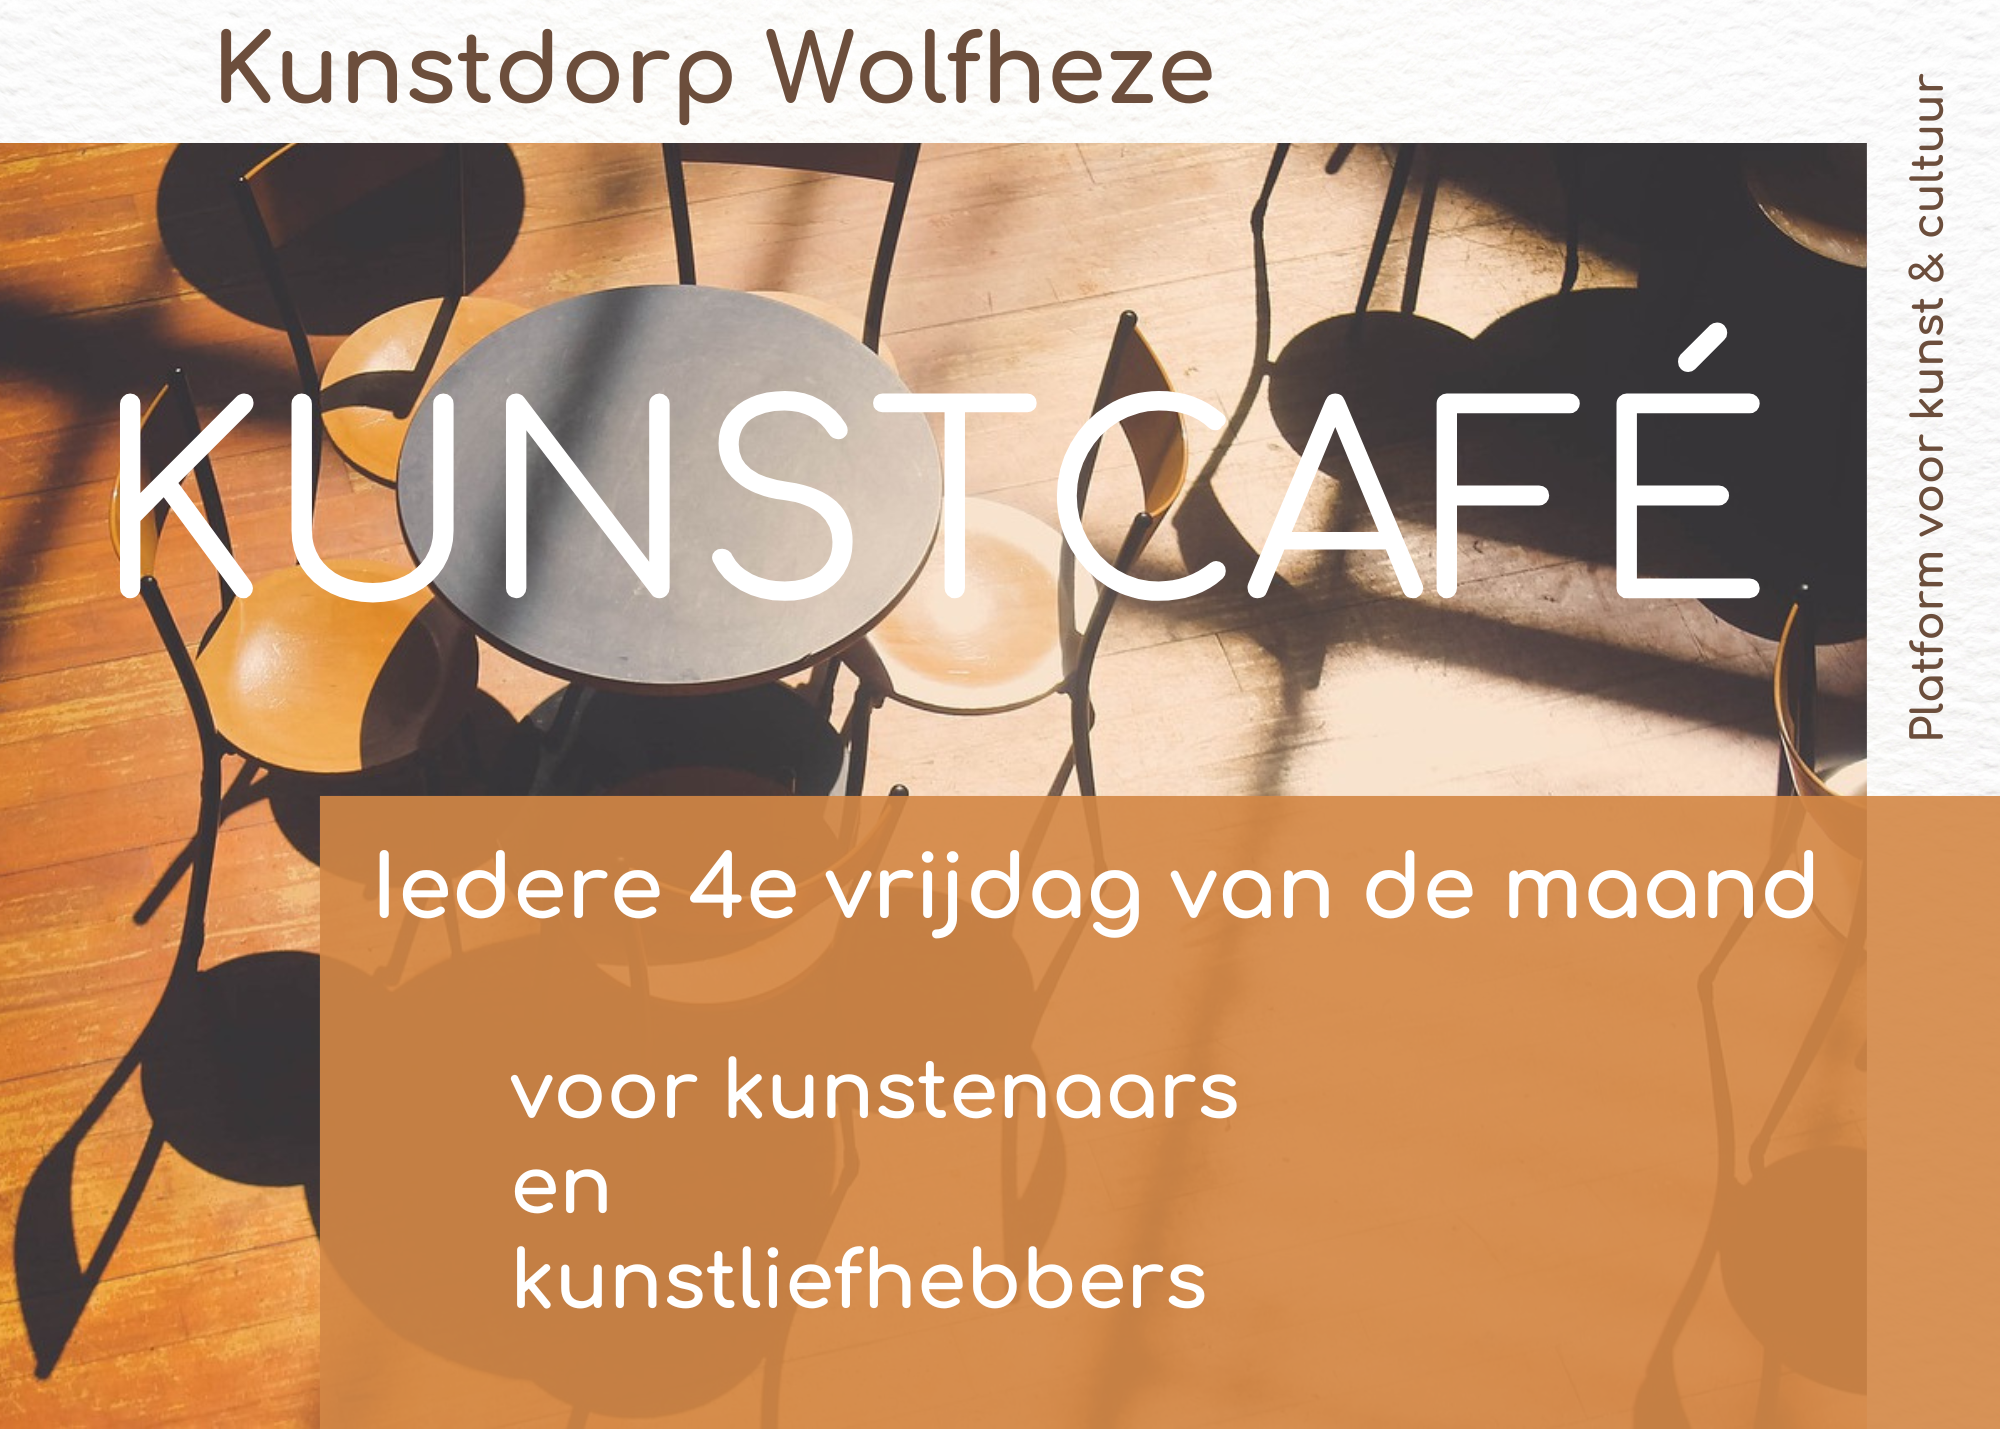 Kunstcafé, Kunstdorp Wolfheze